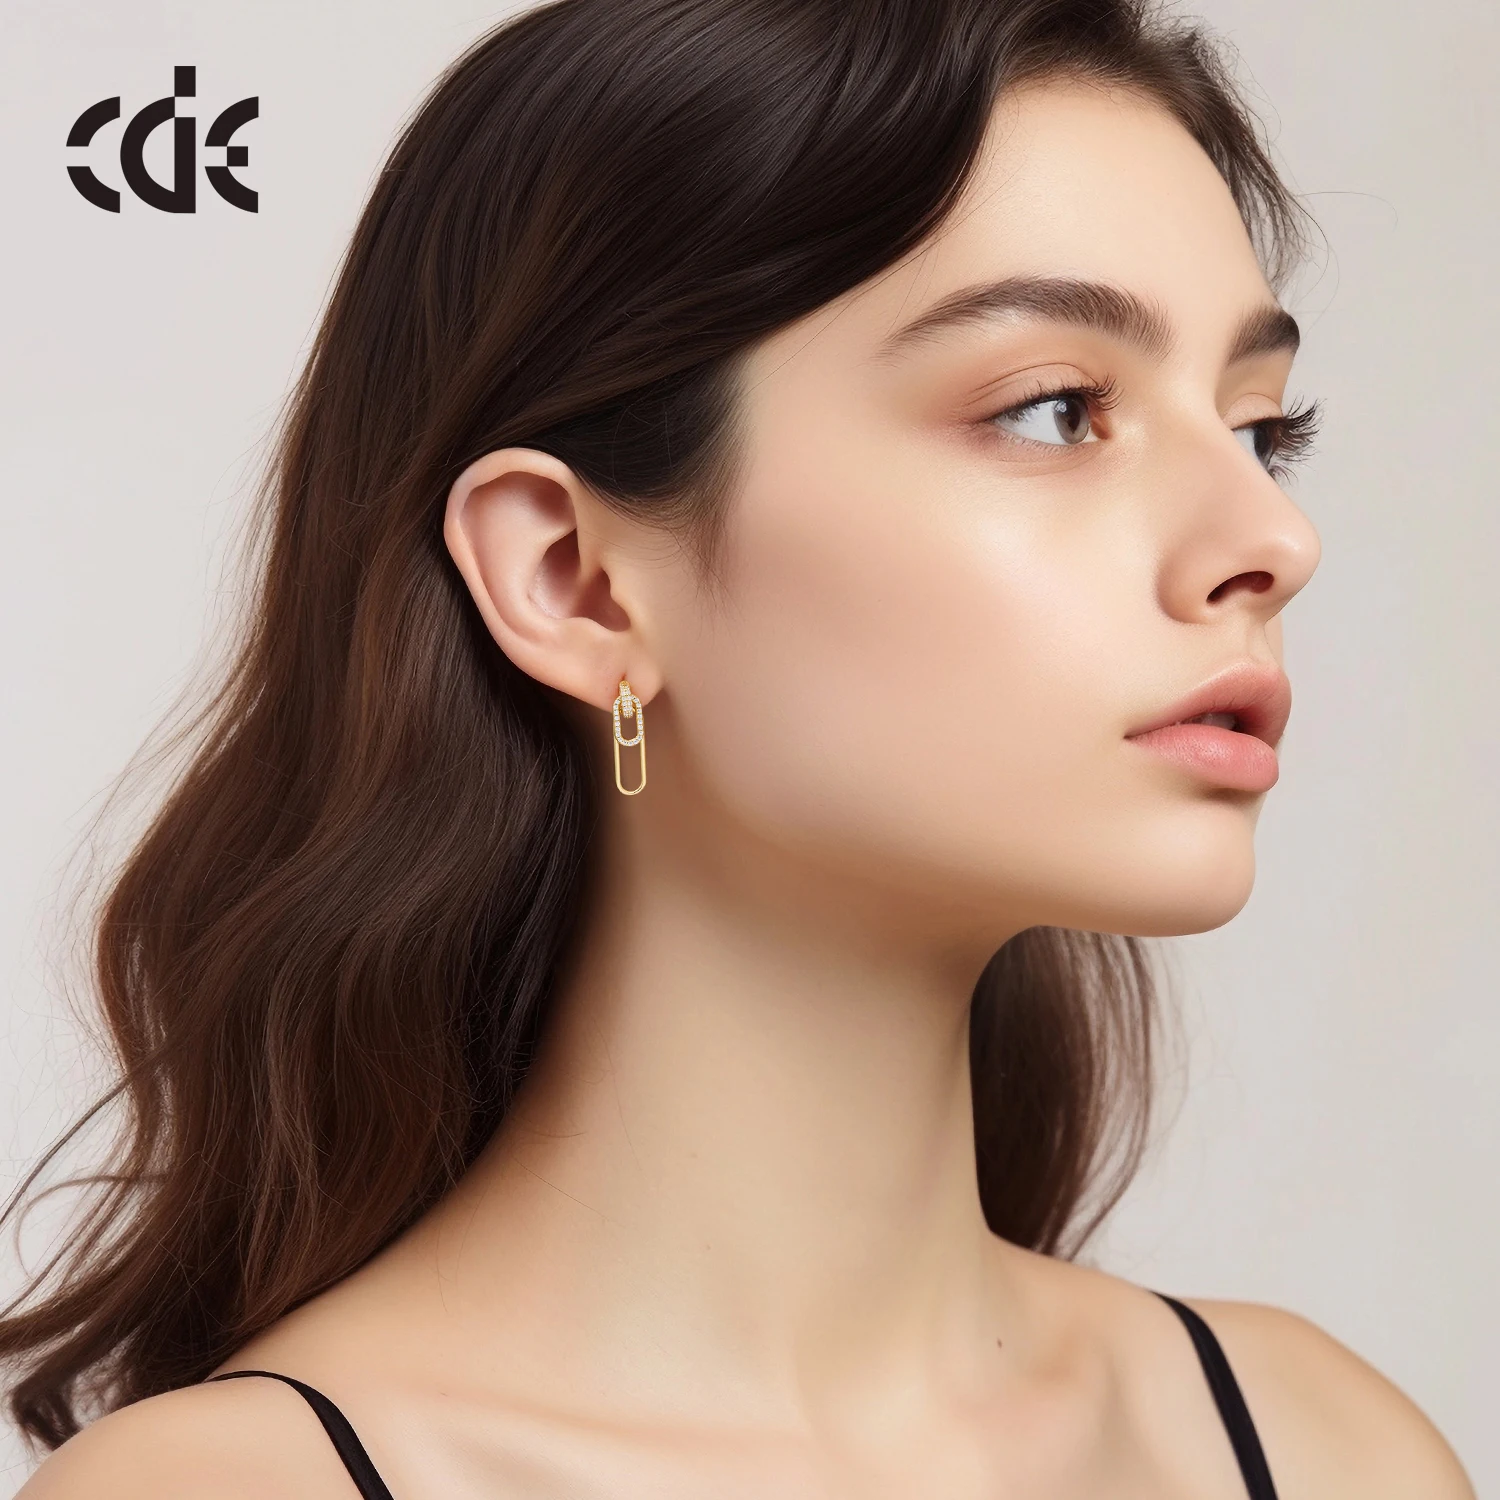 CDE YE1886 Luxury Jewelry 925 Sterling Silver 18K Gold Plated Chain Pendant Earrings 5A Cubic Zirconia Women Dangle Earrings